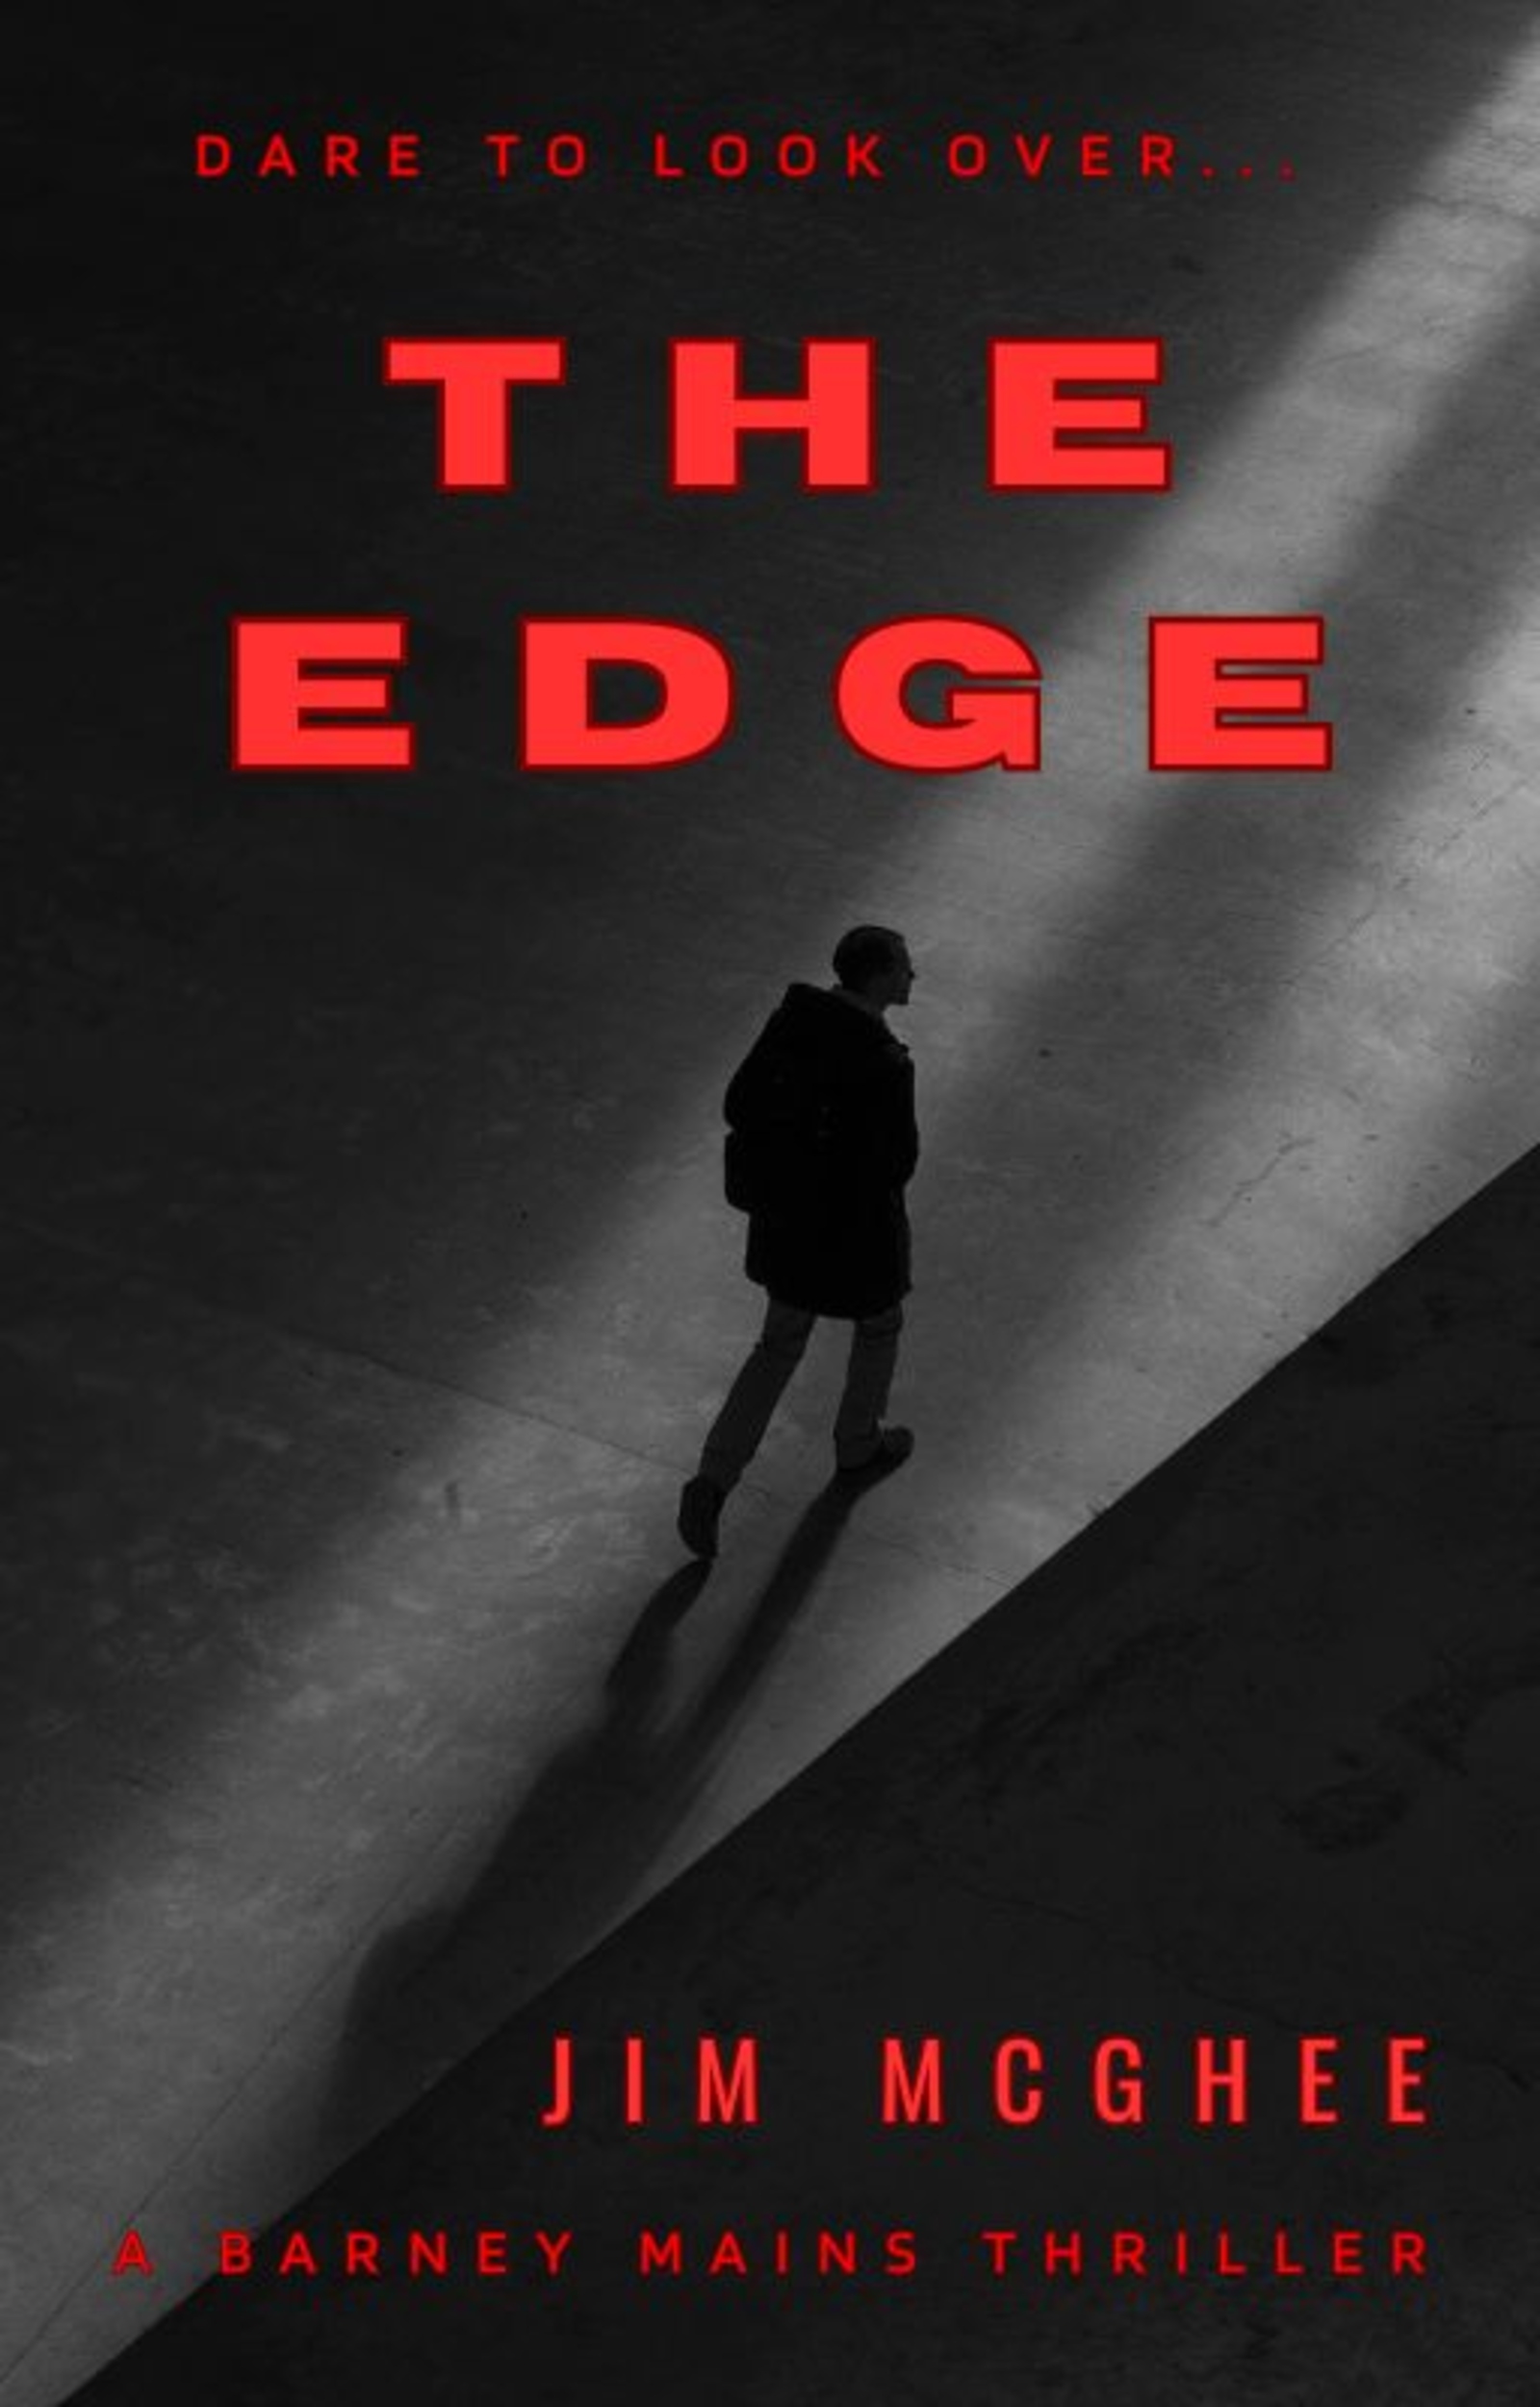 Book Blitz: The Edge by Jim McGhee